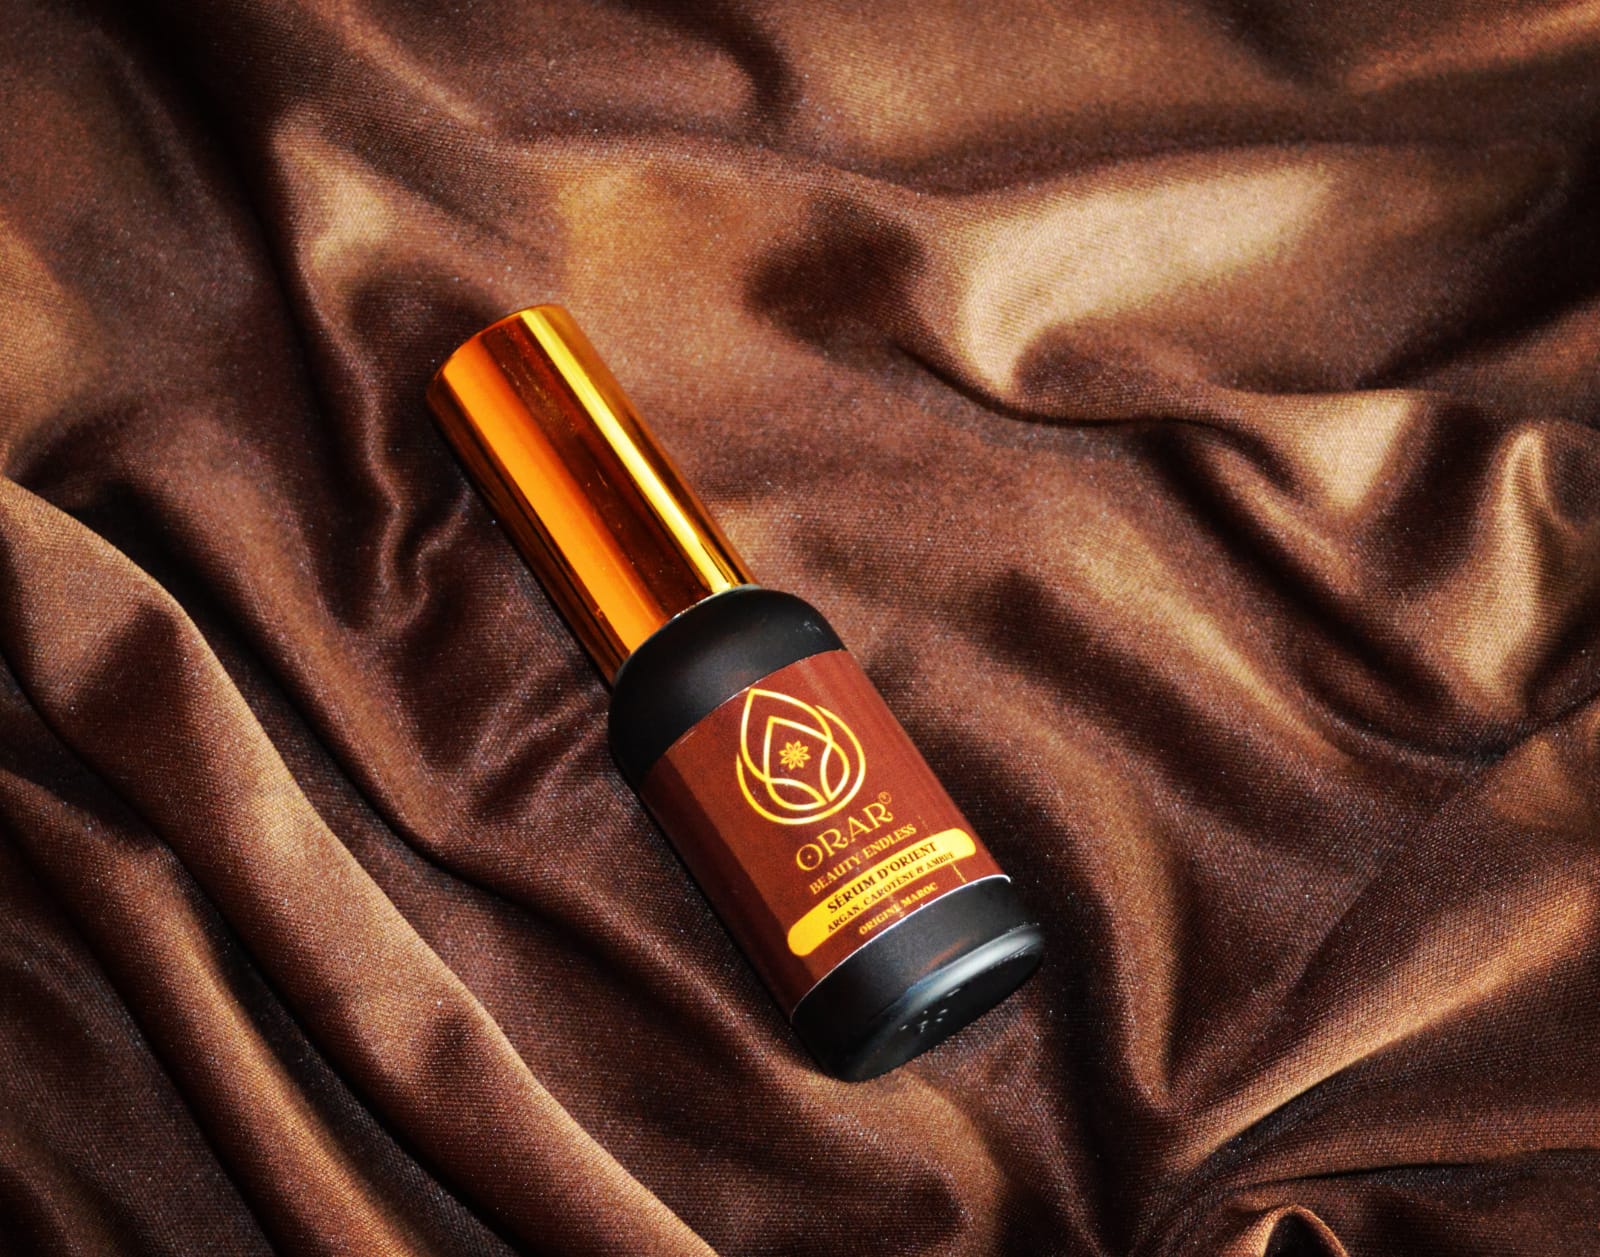 SOIN D'ORIENT - Magnifique Sérum cheveux 30ml - huile d'argan, beta carotène, ambre